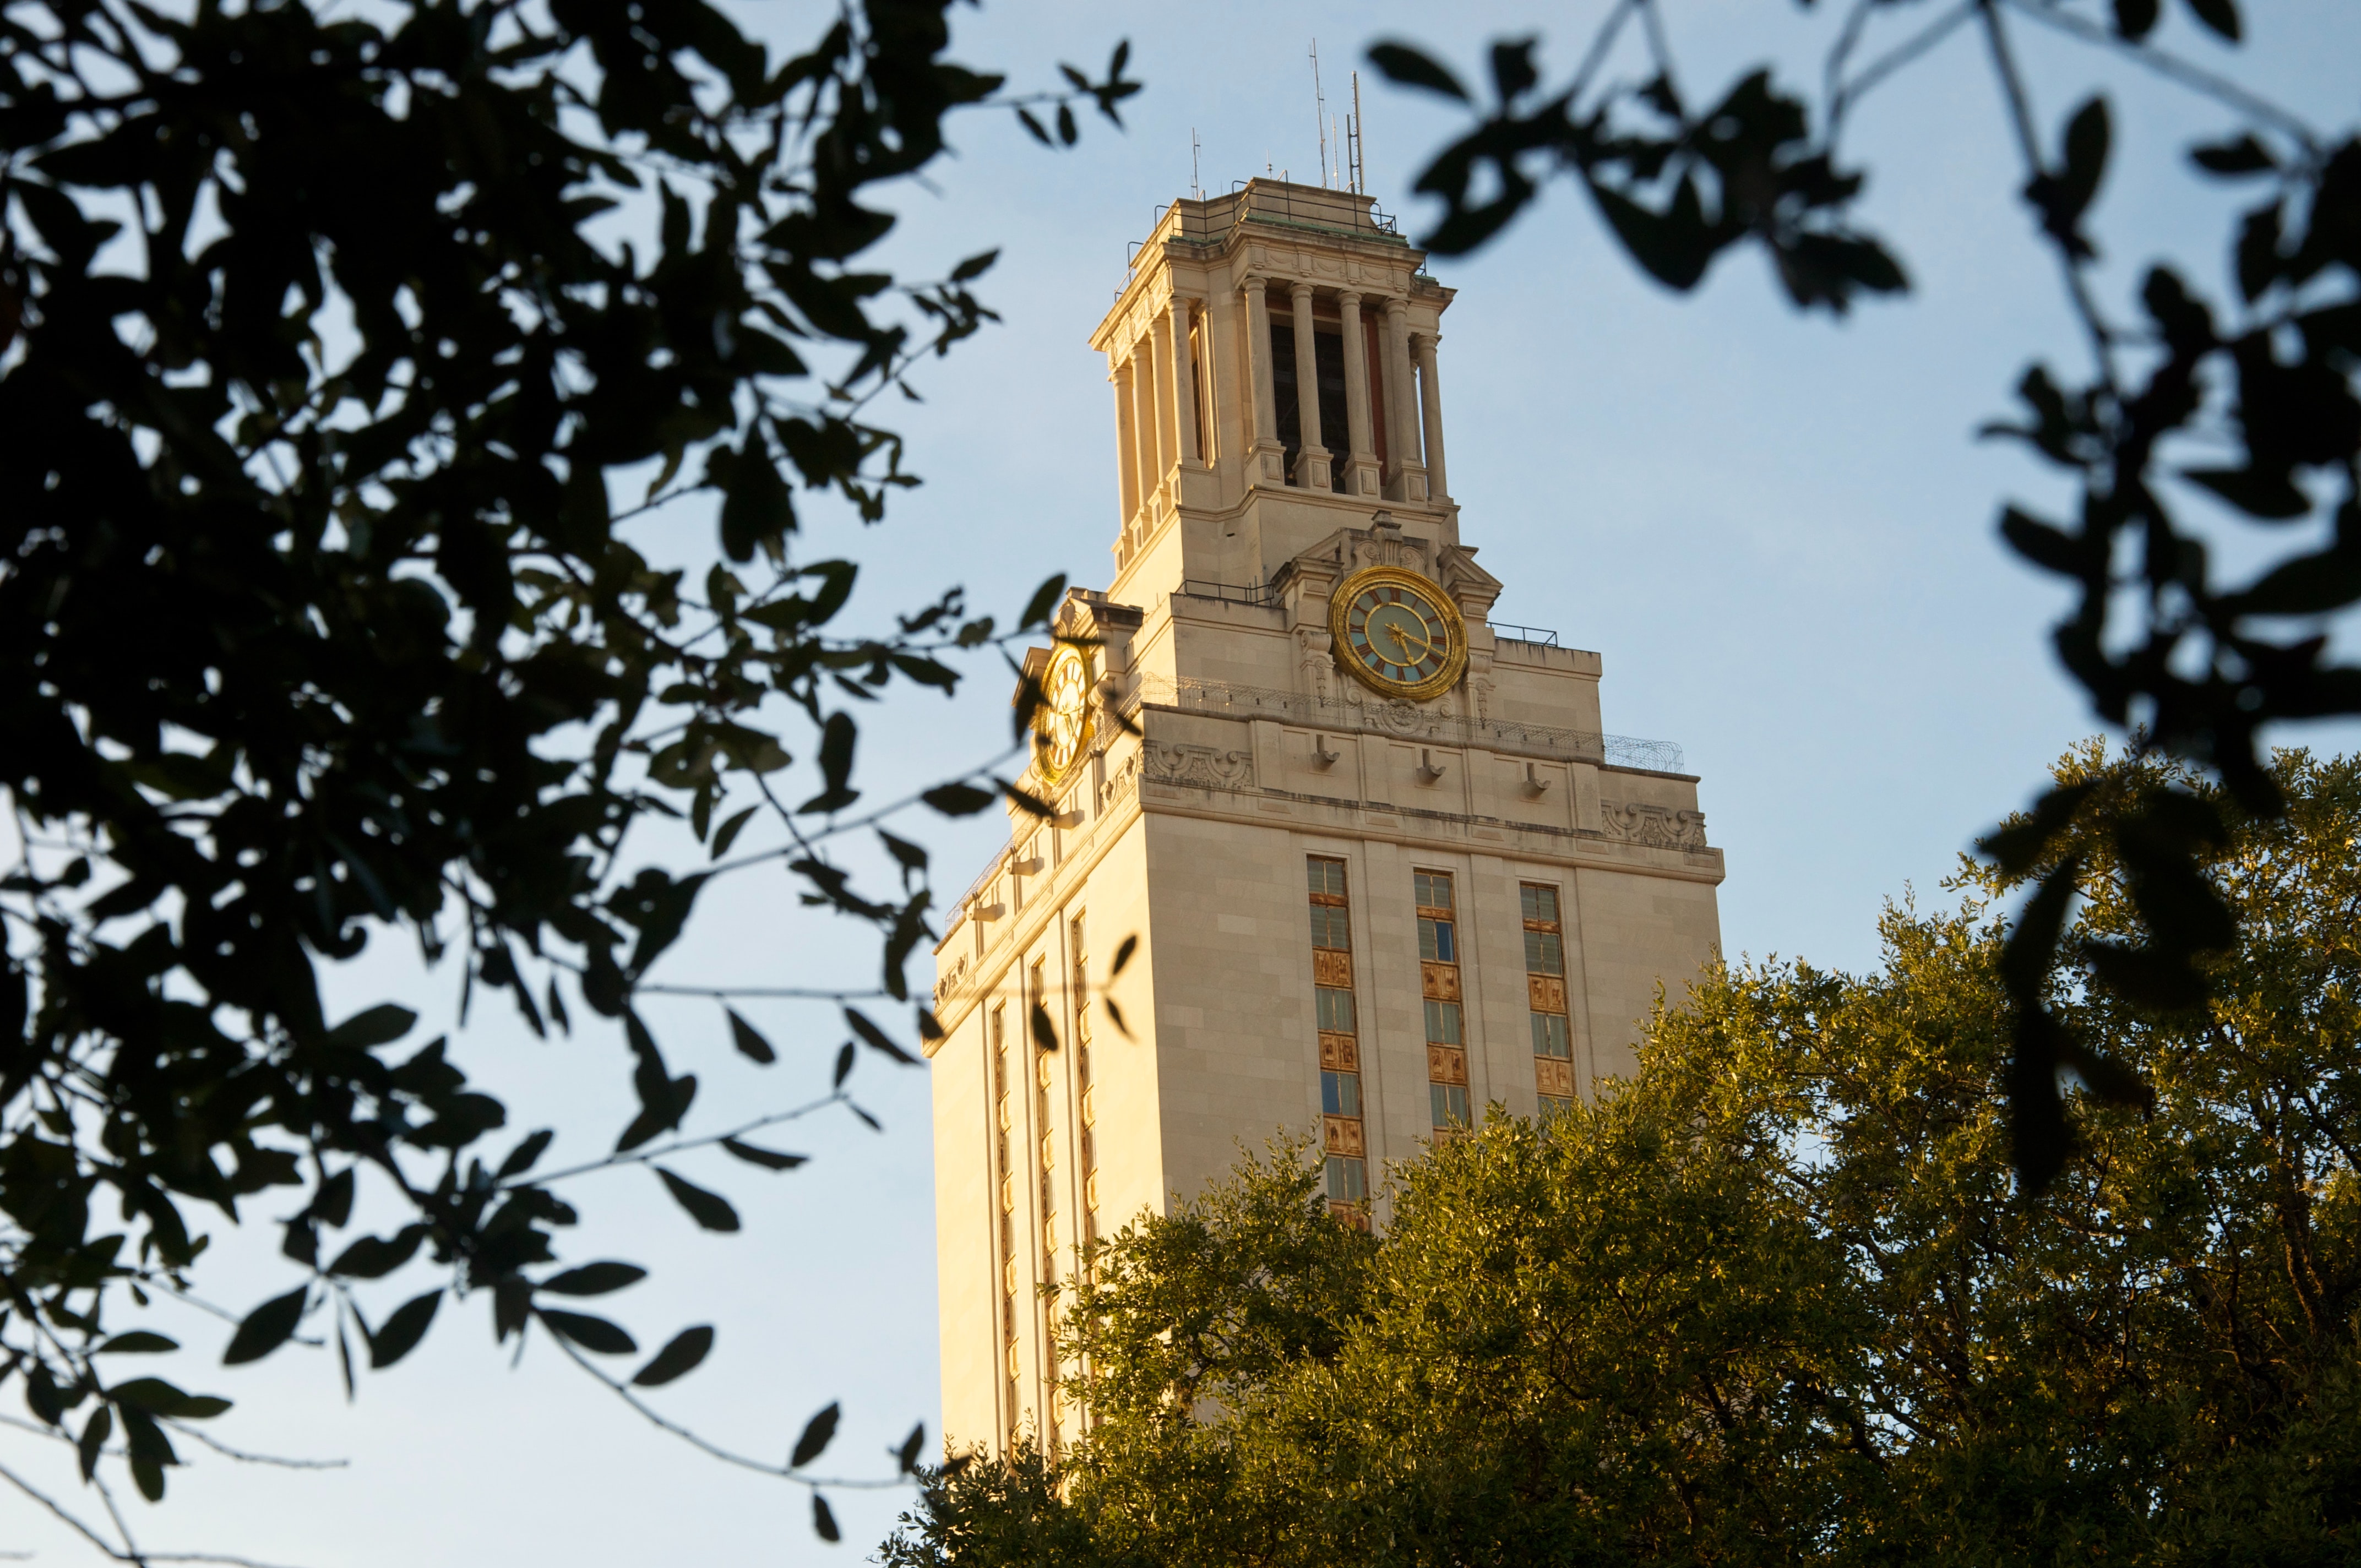 University of Texas Clocktower